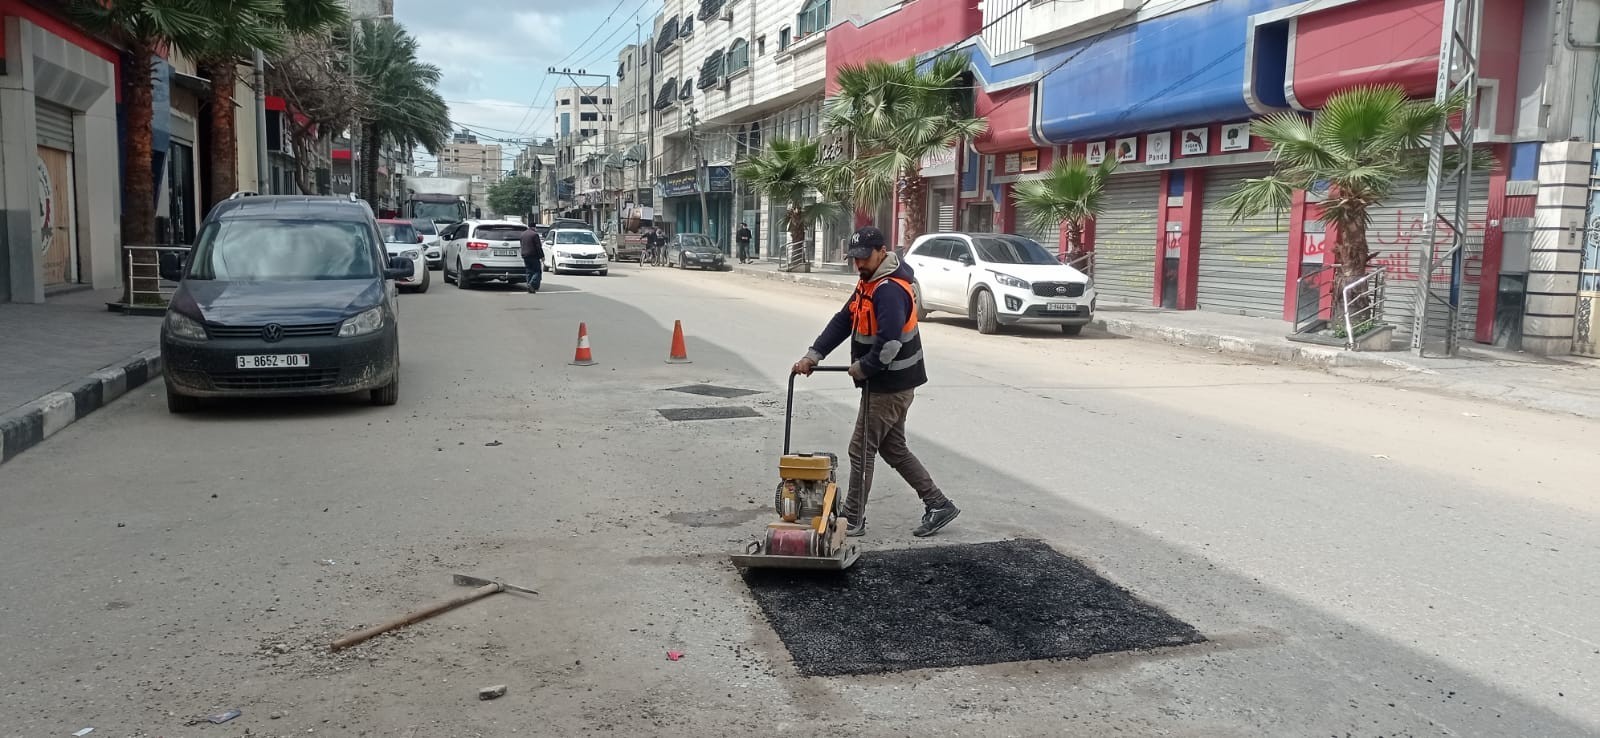 شاهد.. بلدية غزة تنجز أعمال صيانة متفرقة خلال الأسبوع الماضي